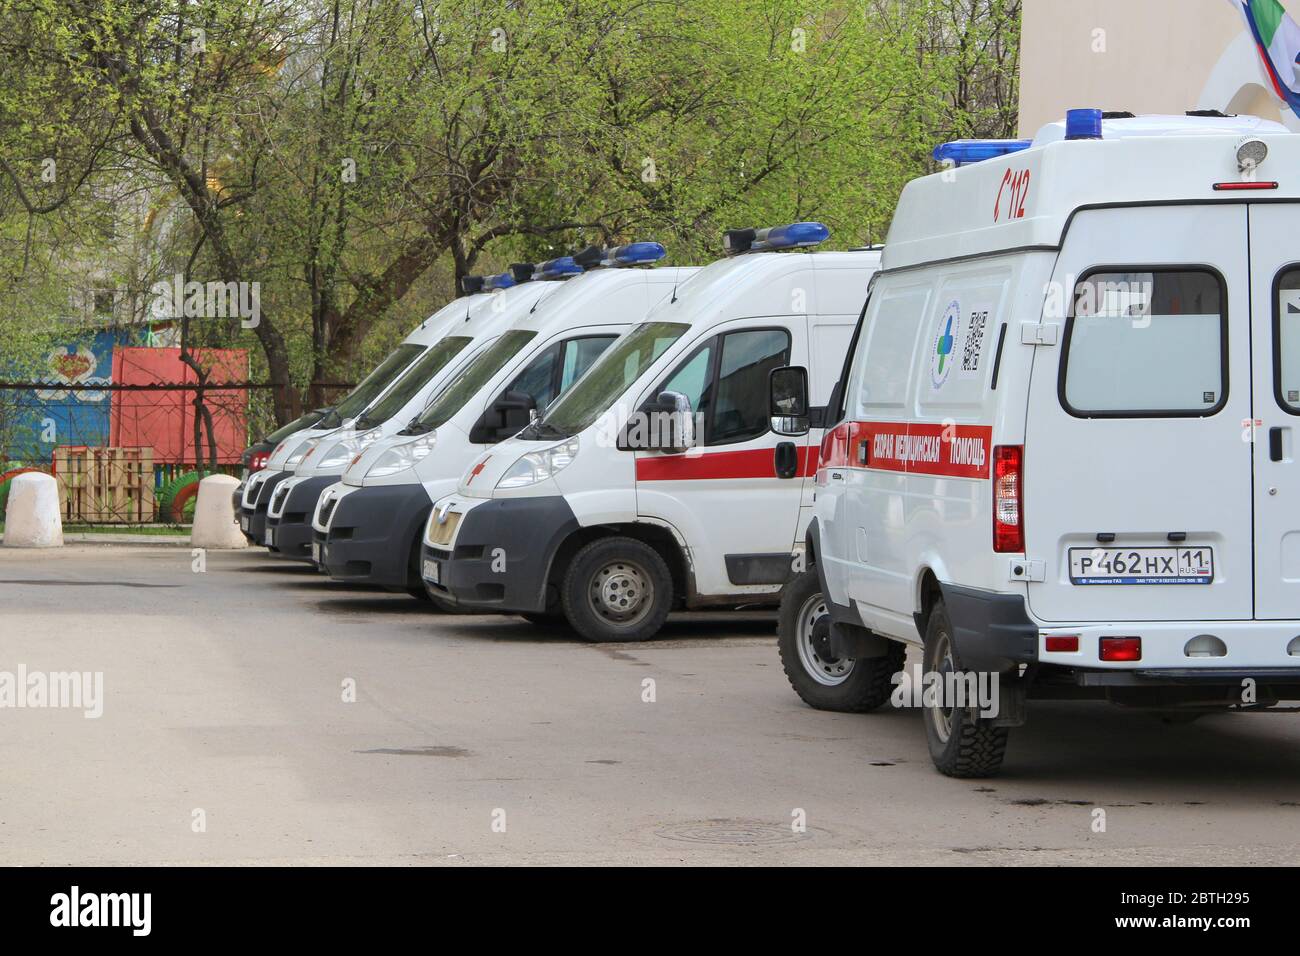 17-05-2020, Syktyvkar, Russia. Molte ambulanze con una striscia rossa con luci blu lampeggianti su una strada della città in Russia. Foto Stock